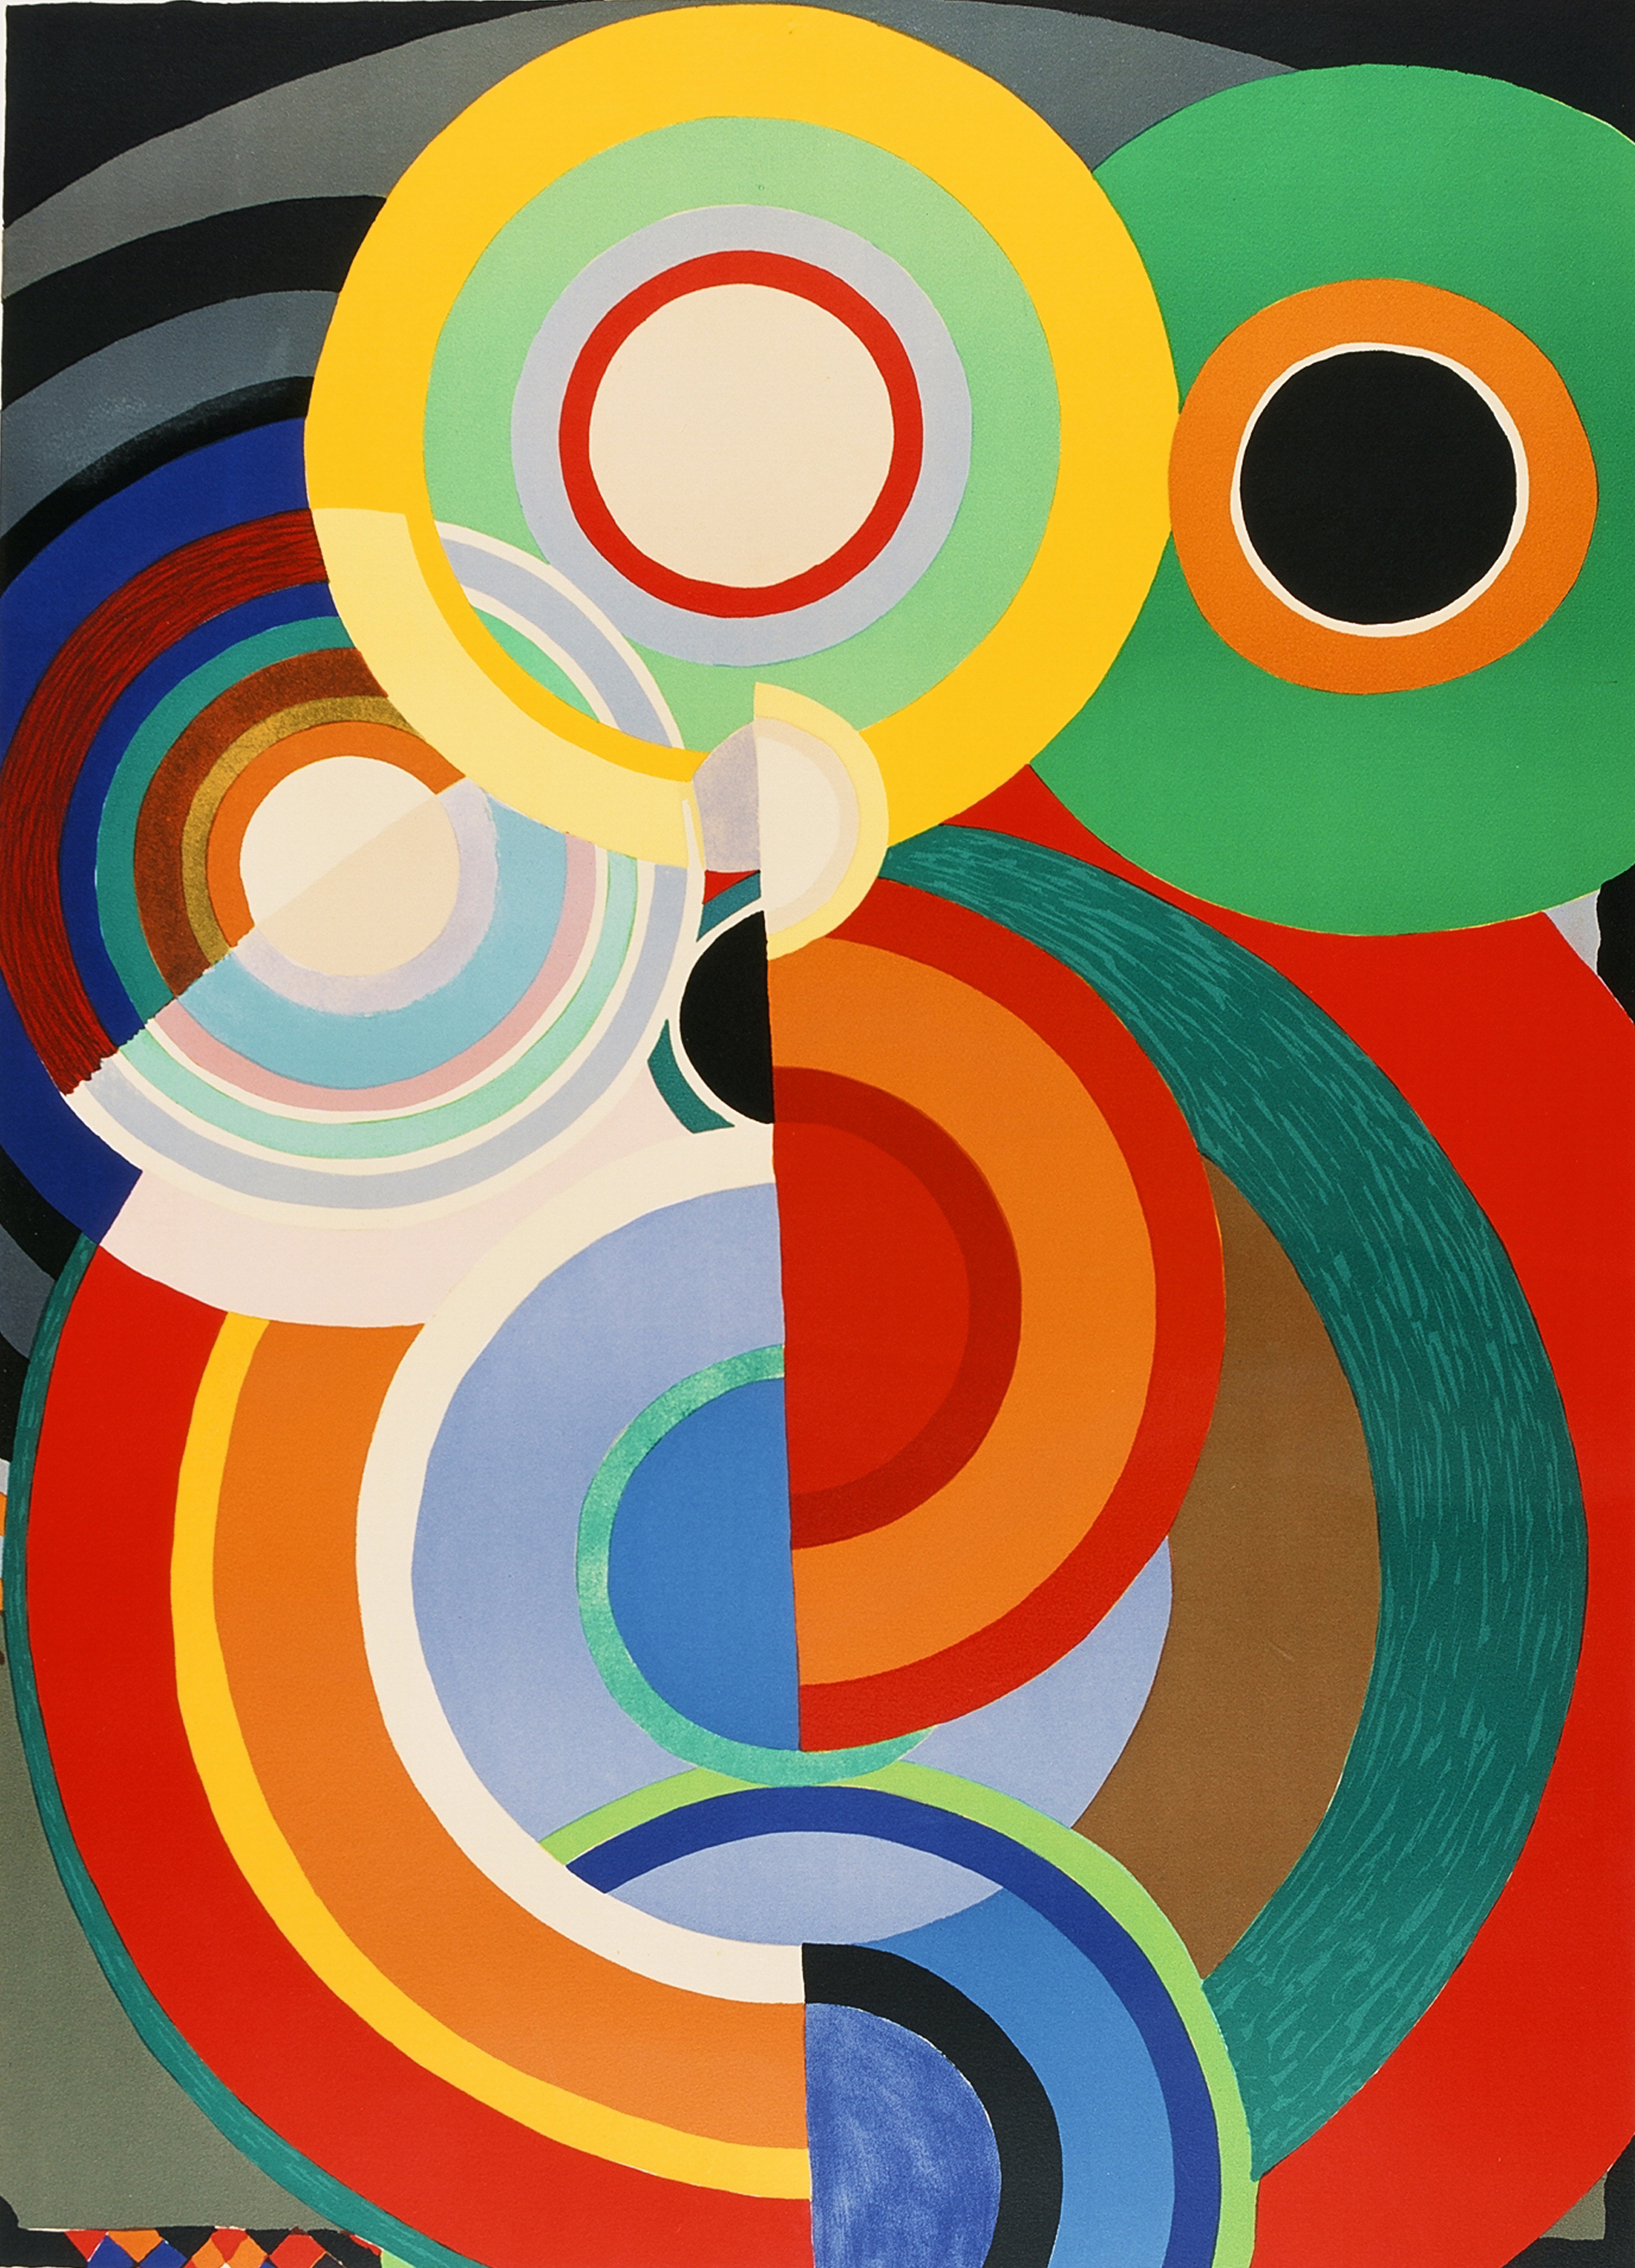 Sonia DELAUNAY, Automne, 1965, lithographie en couleurs, collection musée des Beaux-Arts de Brest